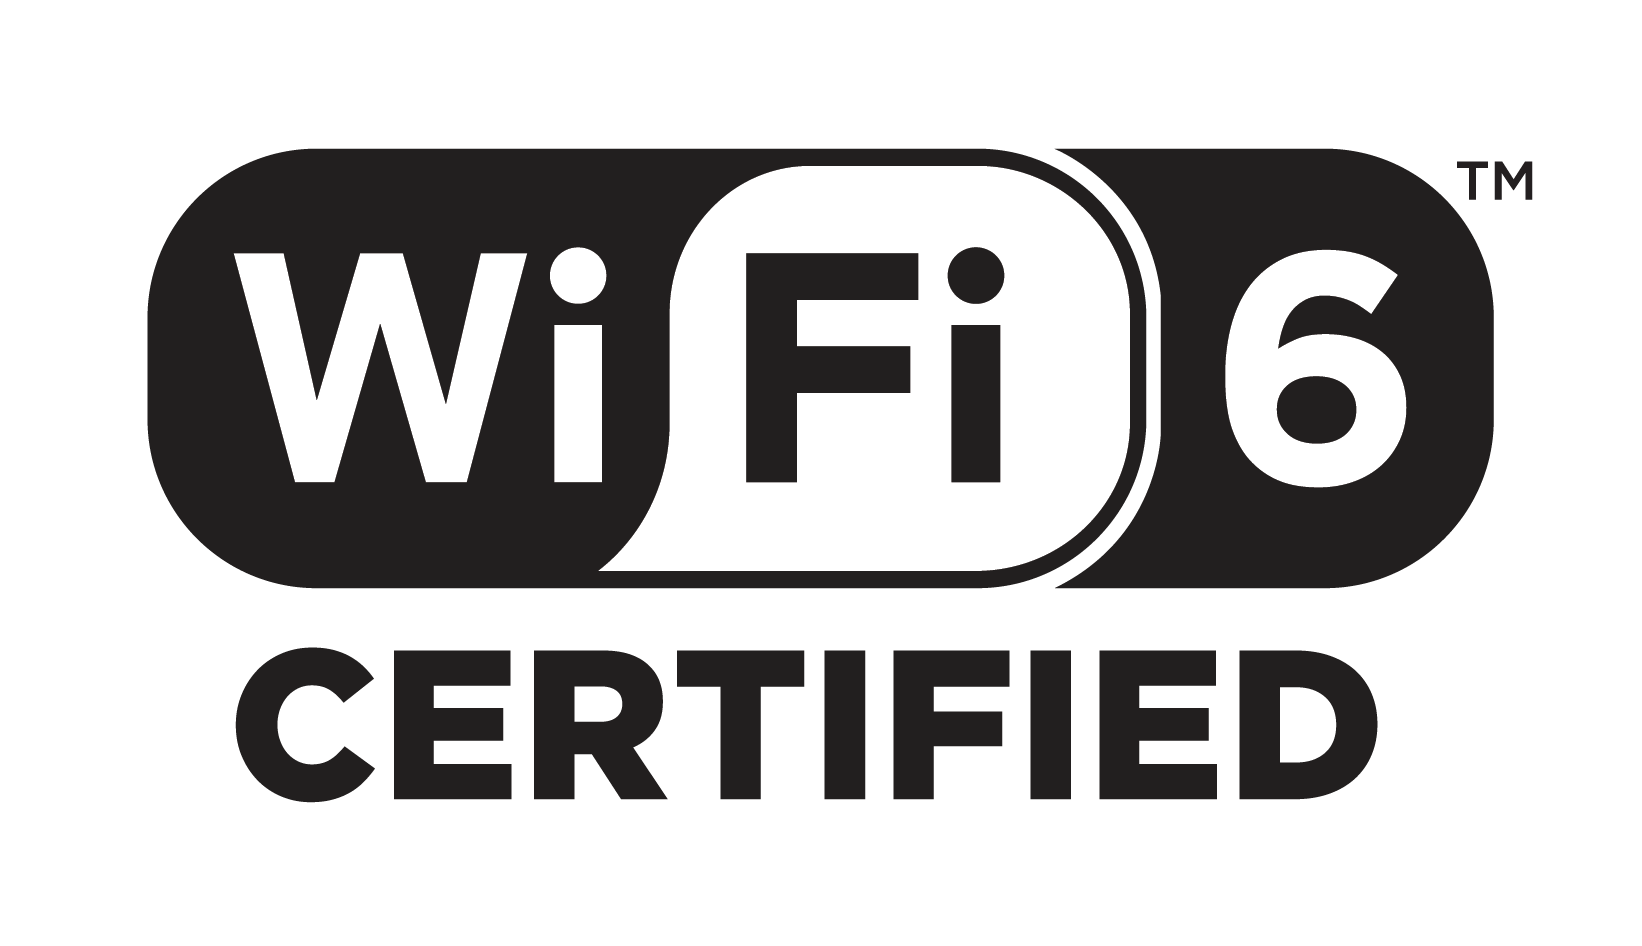 Wi-Fi 6-certifieringsprogrammet startar när Wi-Fi är snabbare när du är på språng